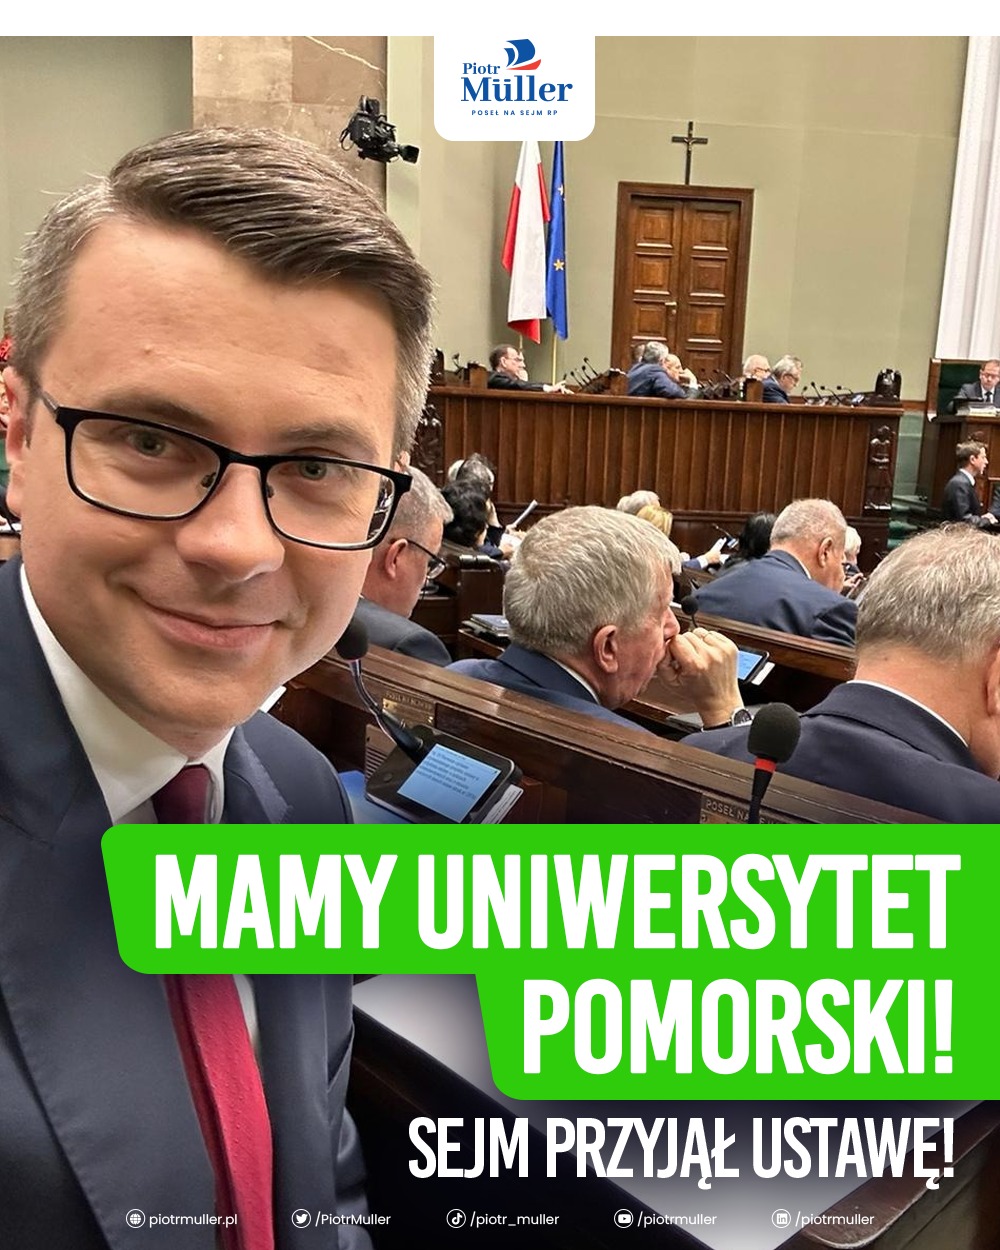 Sejm przyjął ustawę o podwyższeniu rangi Akademii Pomorskiej w Słupsku do Uniwersytetu. Nowa nazwa uczelni będzie funkcjonować już od 1 czerwca.